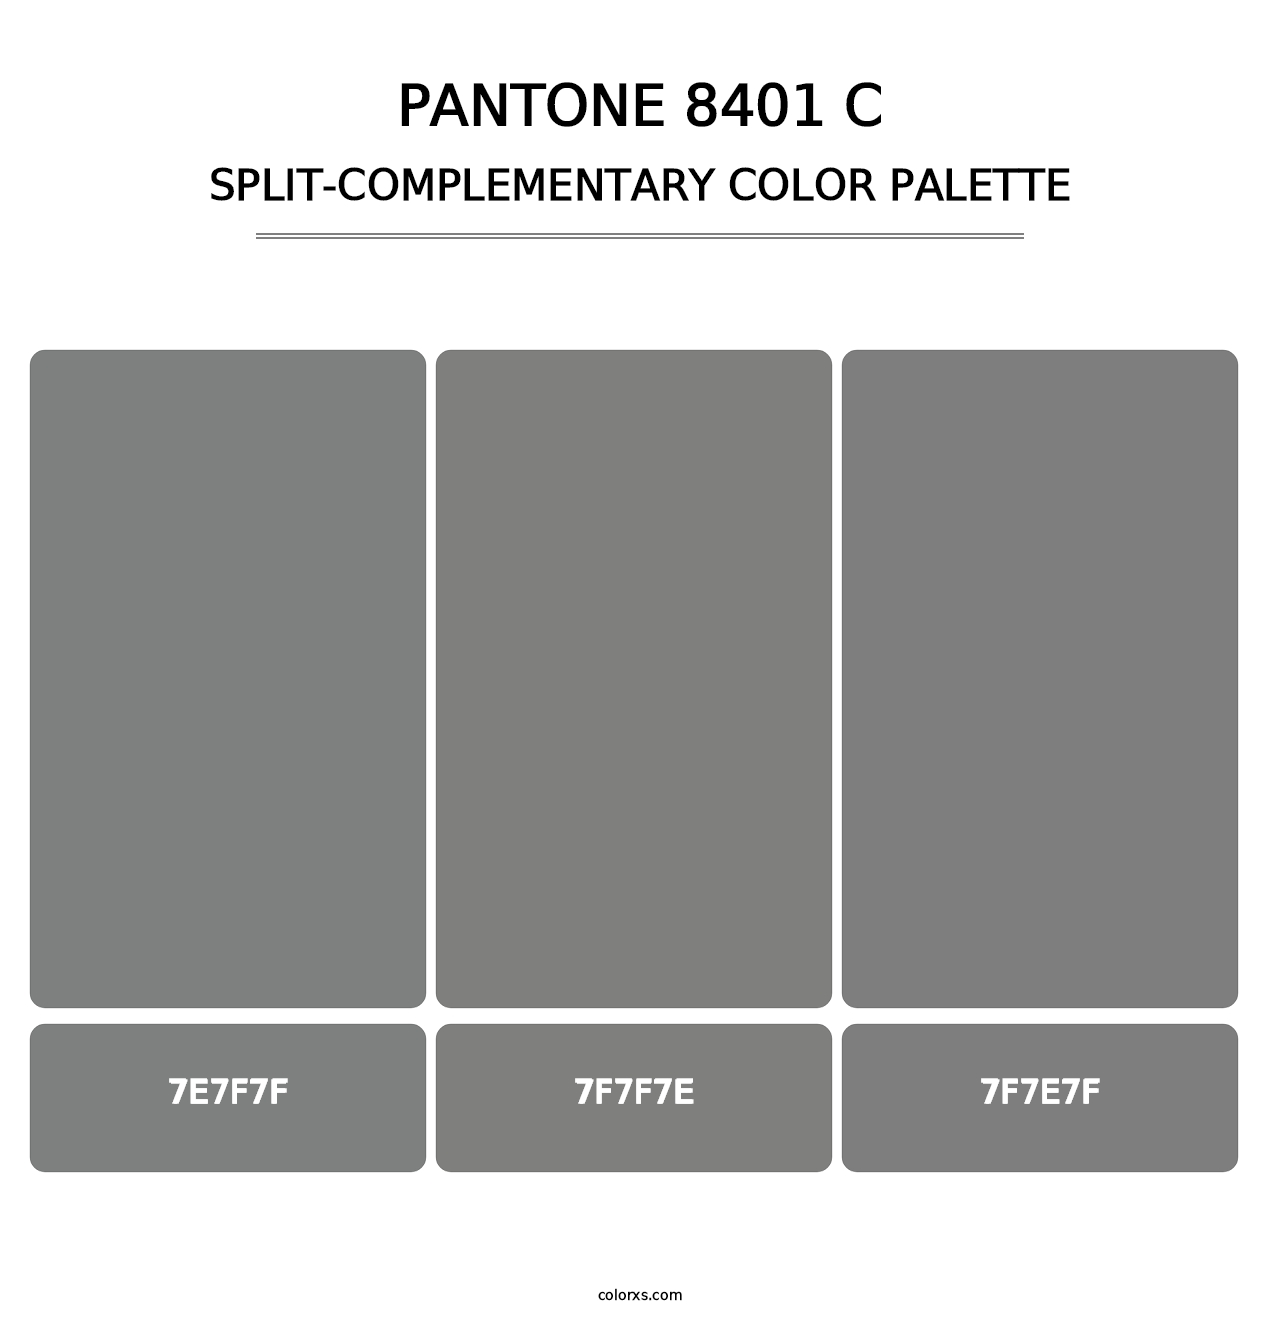 PANTONE 8401 C - Split-Complementary Color Palette